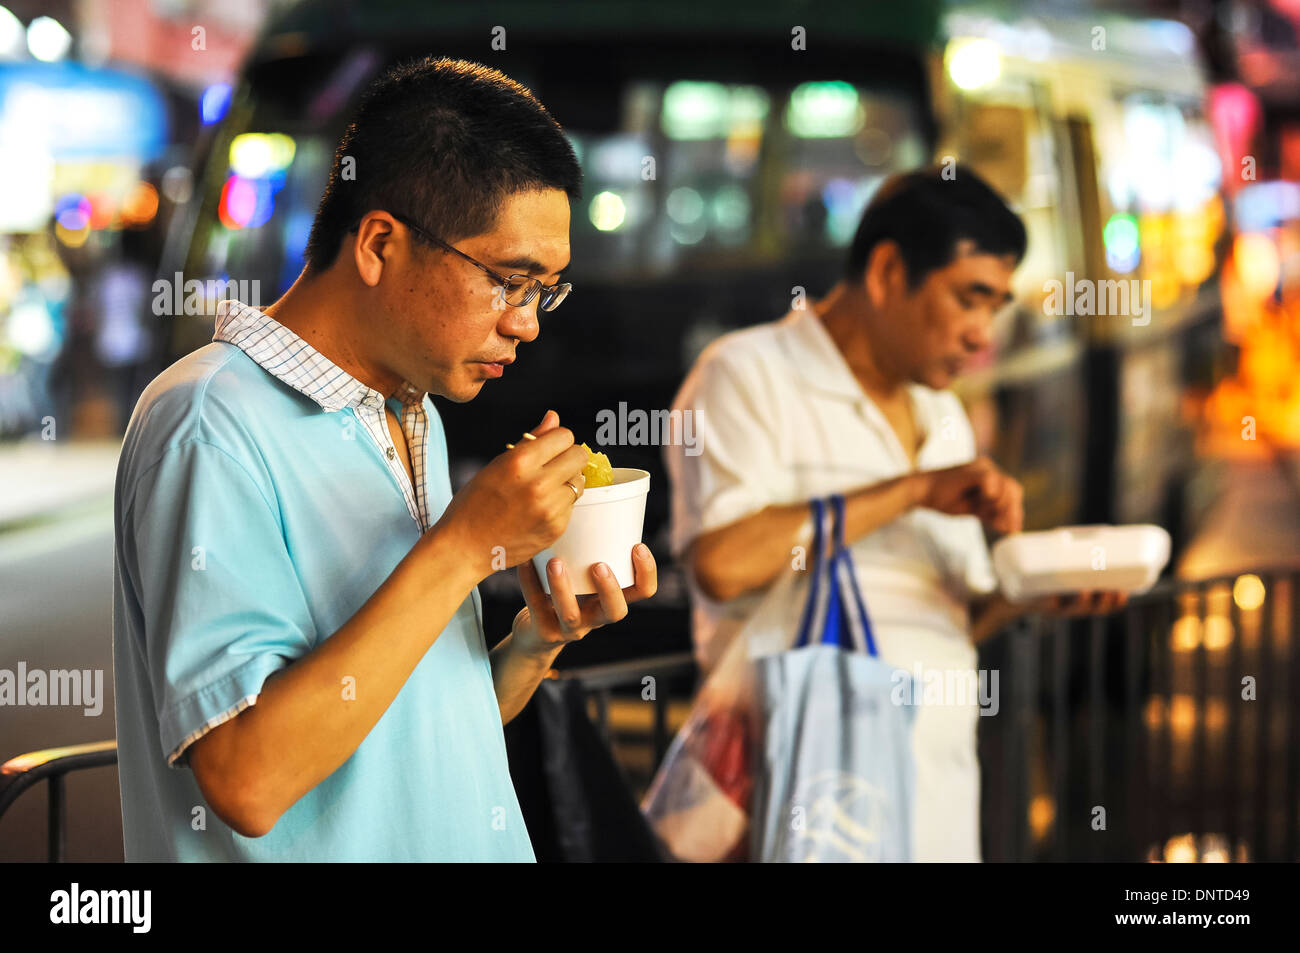 Two guys eating street food, Causeway Bay, Hong Kong Stock Photo